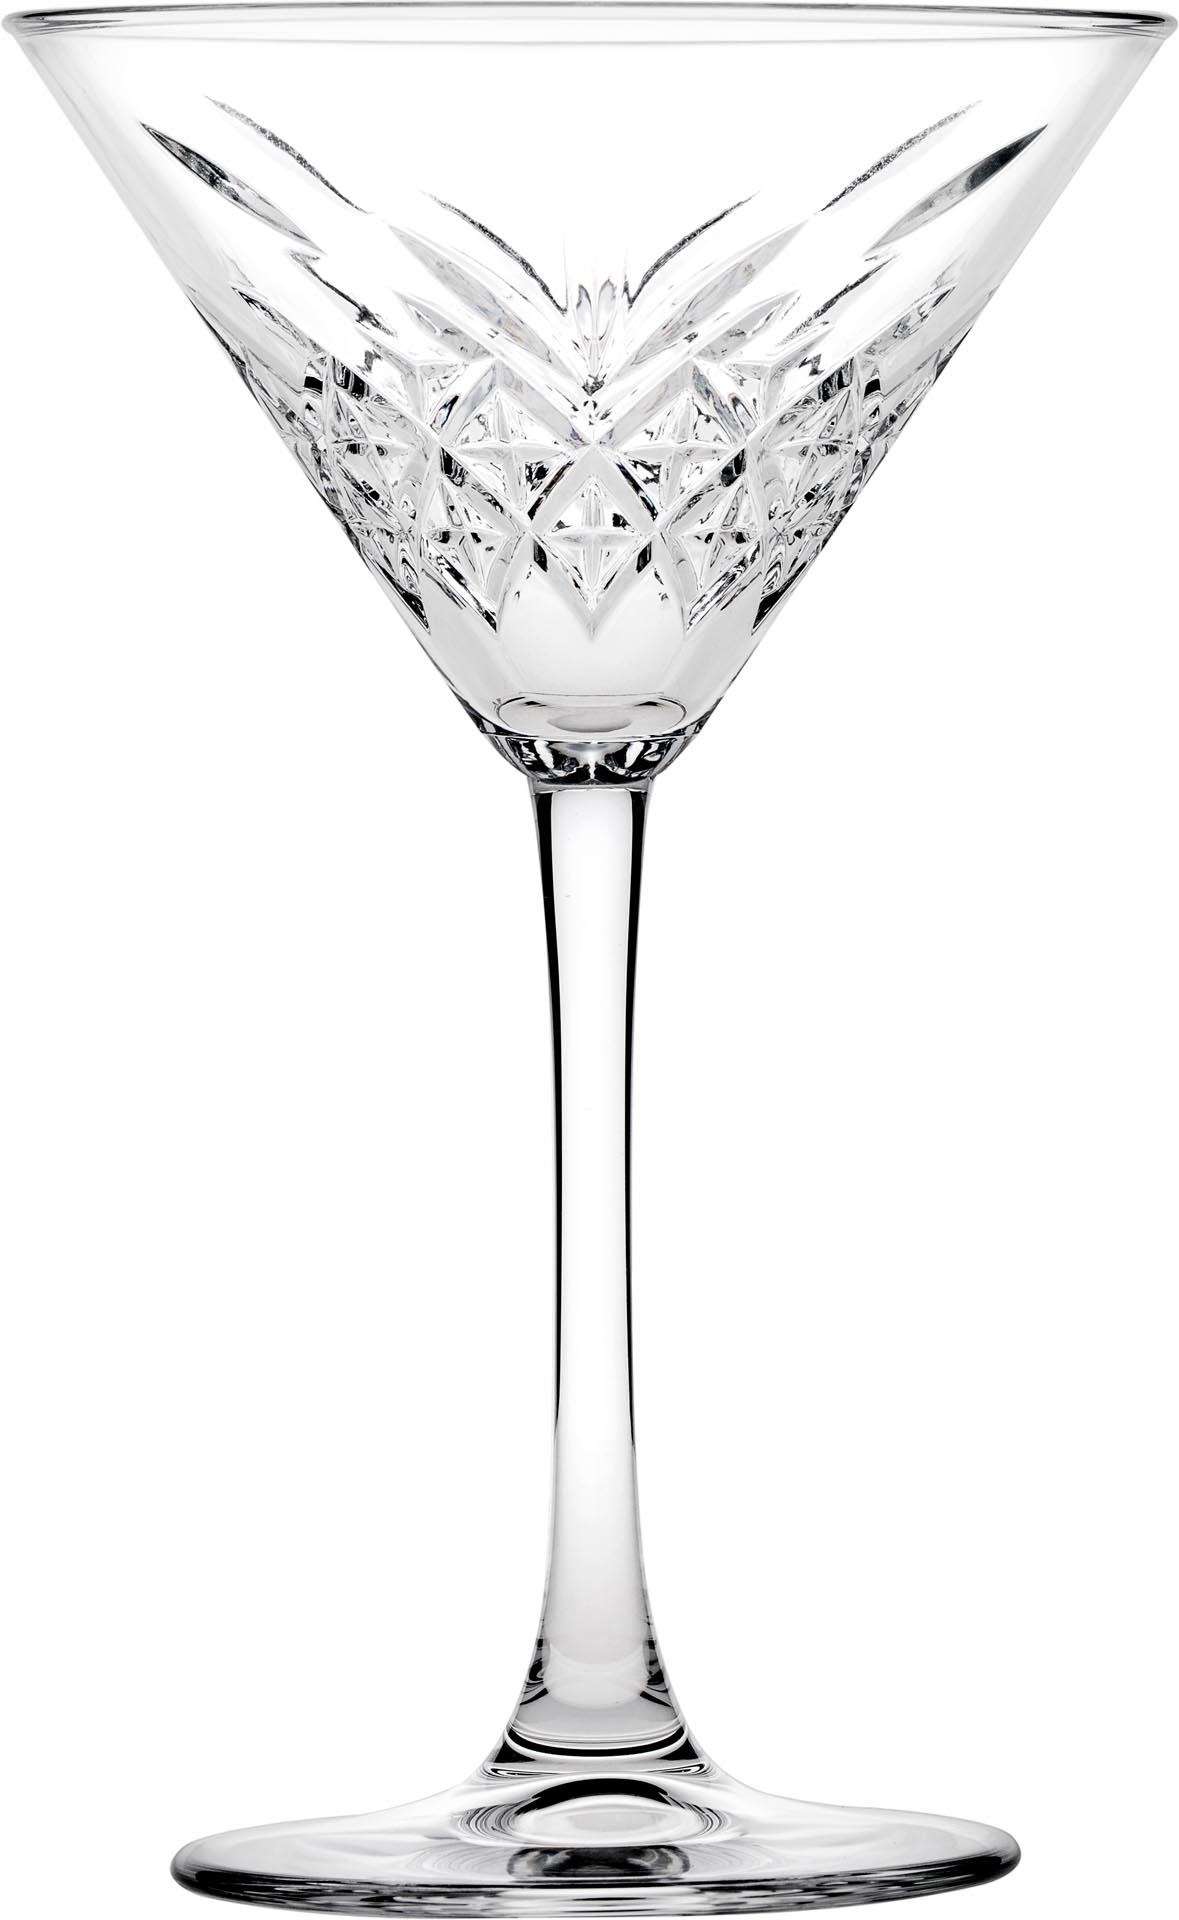 Ob geschüttelt oder gerührt. Wie Sie Ihren Martini genießen, bleibt Ihnen überlassen. Ein Muss ist jedoch das Martiniglas. 

Das Martiniglas hat eine charakteristische Form mit hohem Wiedererkennungswert, weshalb dieses Cocktailglas symbolisch für Cocktails steht.&nbsp;&nbsp;